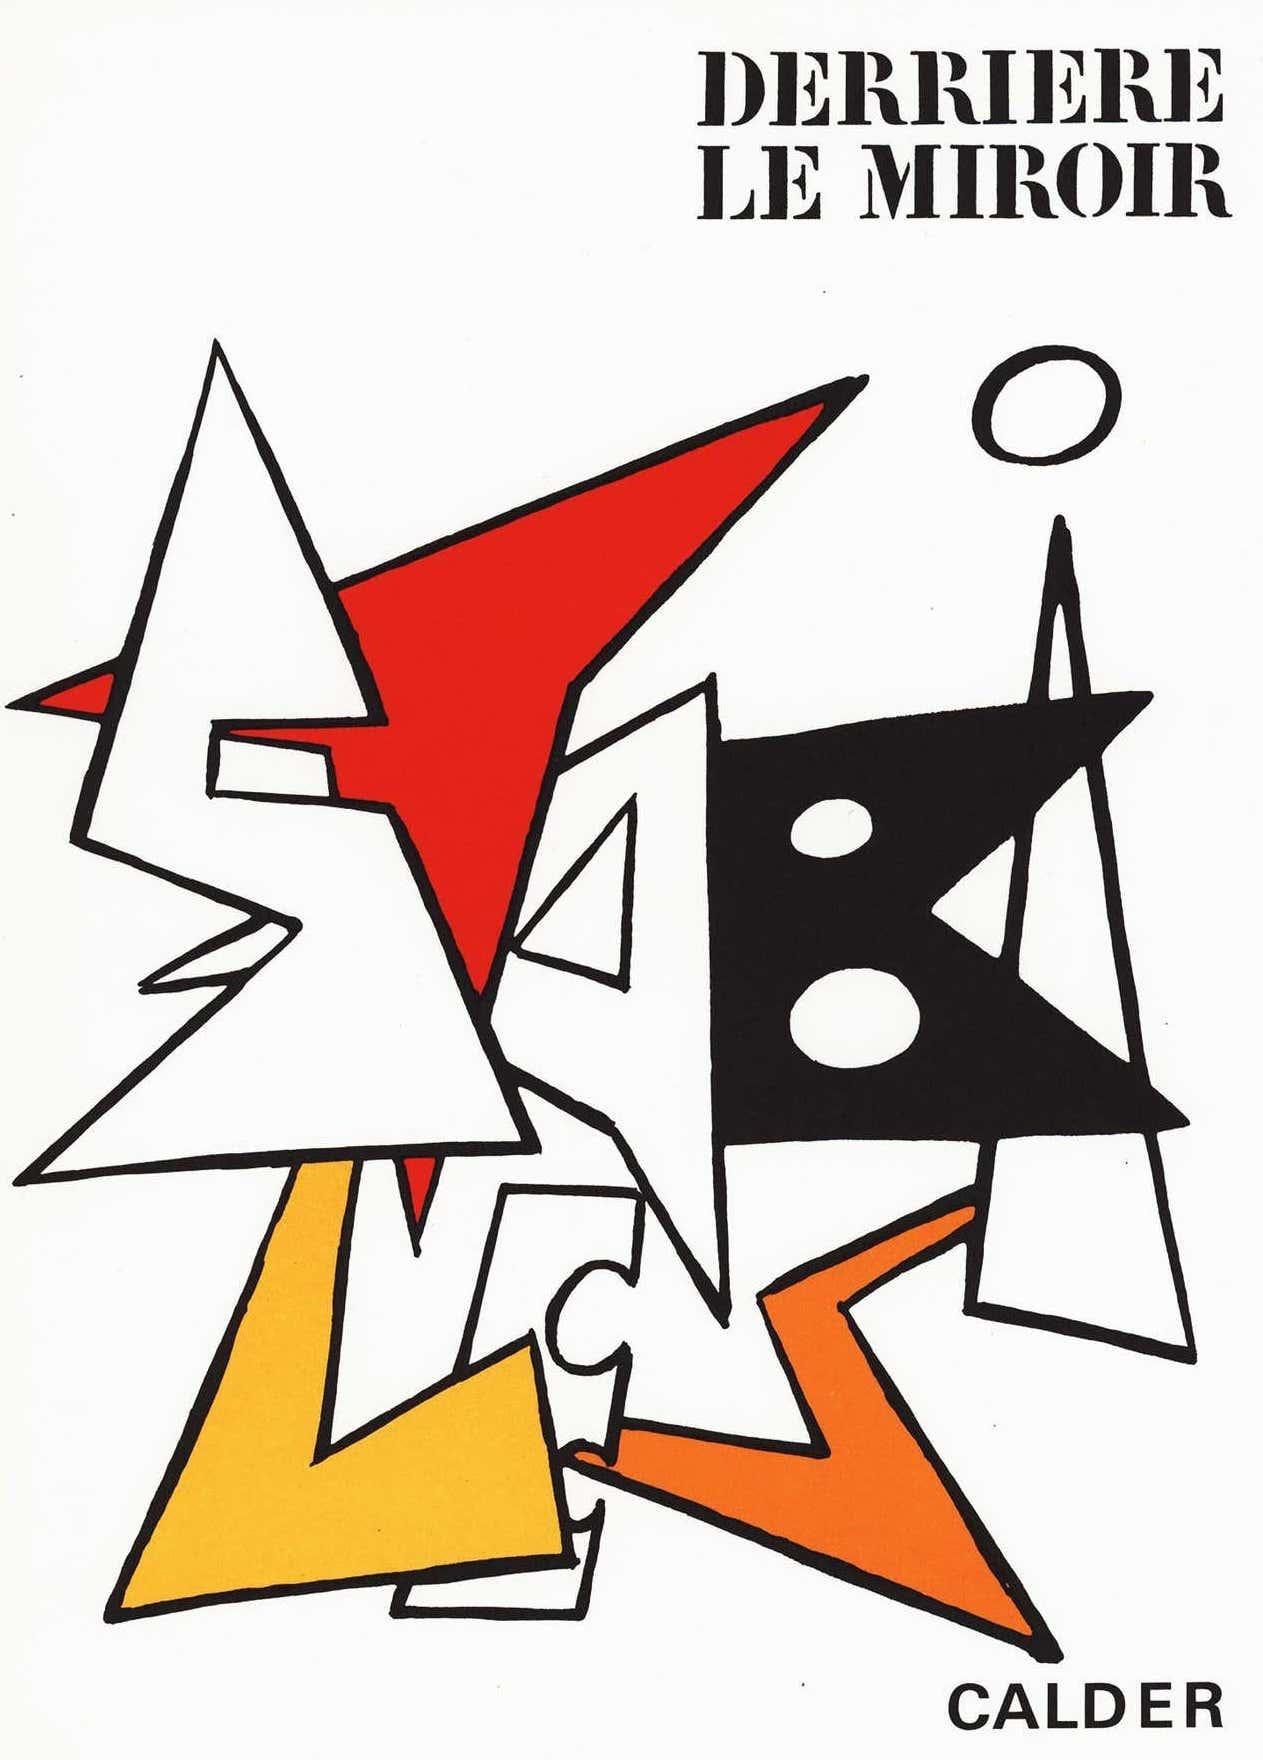 Couverture lithographique d'Alexander Calder des années 1960 (tirée de Derrière le miroir) - Print de (after) Alexander Calder